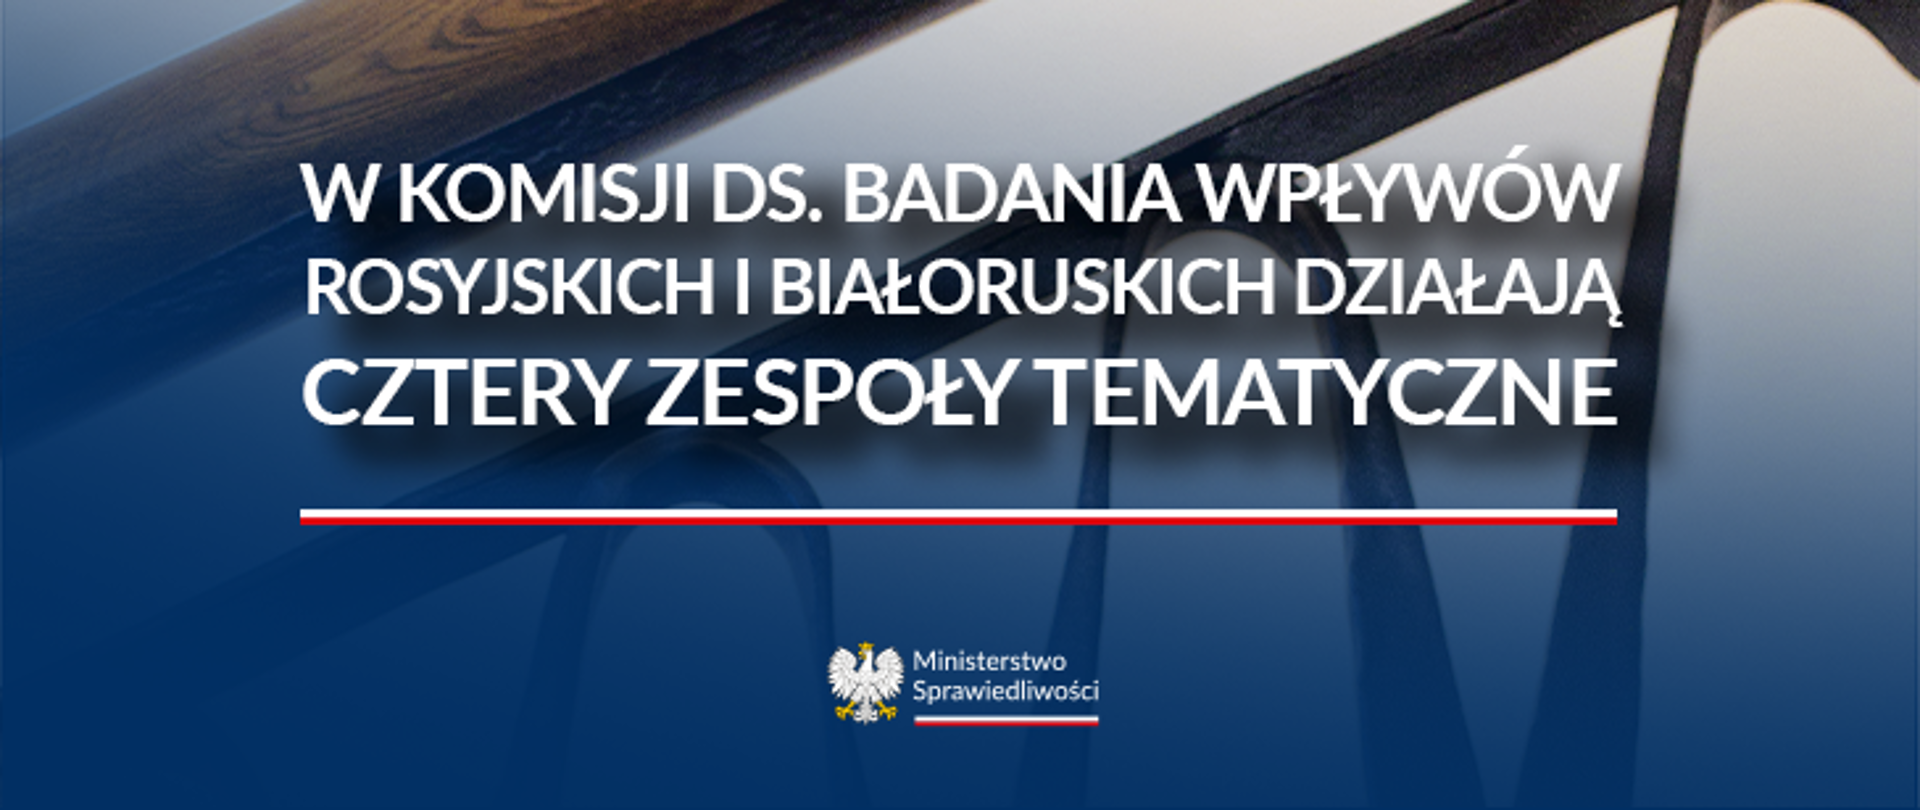 W Komisji ds. badania wpływów rosyjskich i białoruskich działają cztery zespoły tematyczne